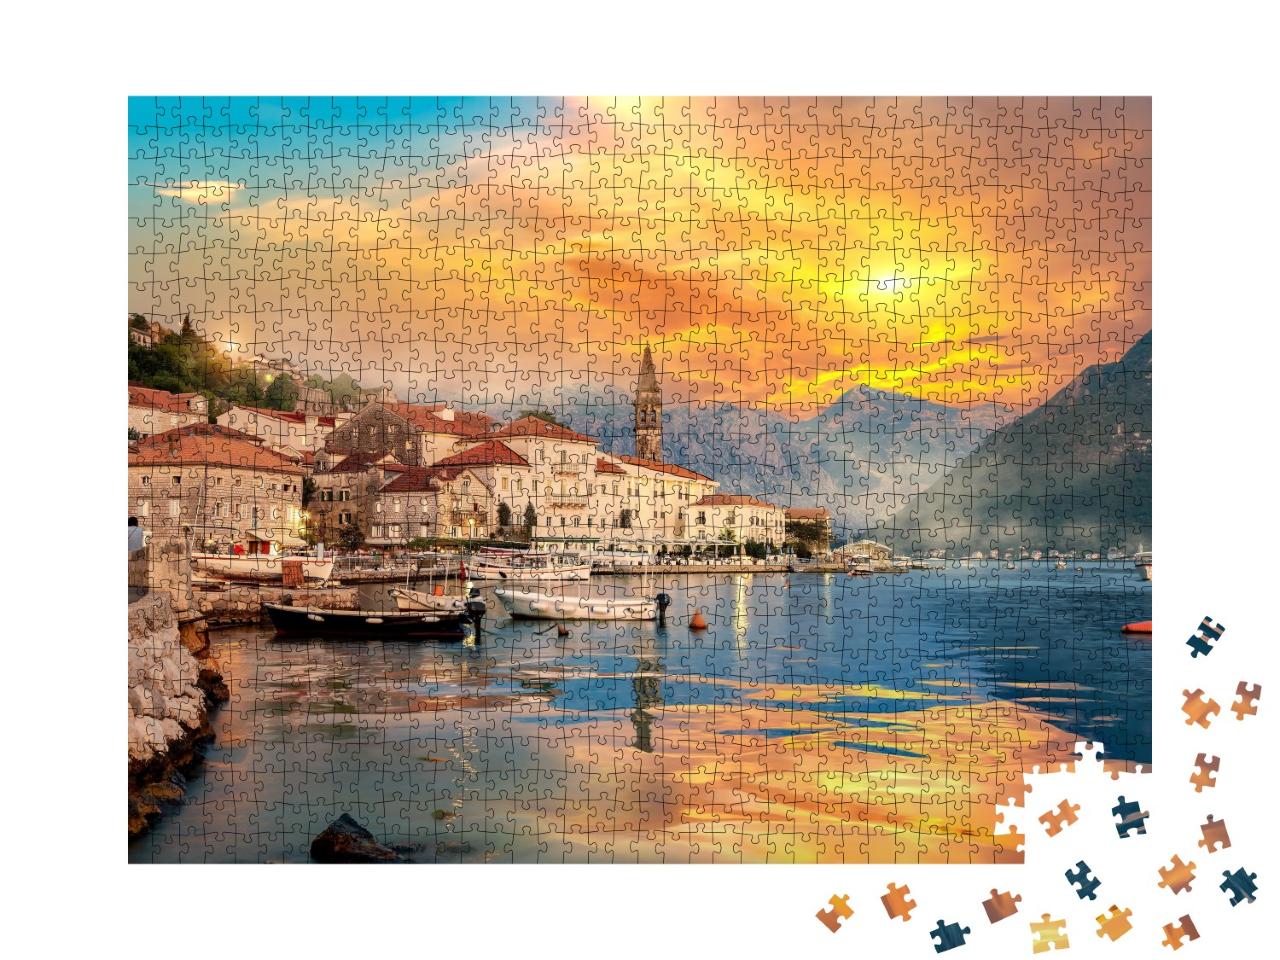 Puzzle de 1000 pièces « Ville historique de Perast dans la baie de Kotor, Monténégro »